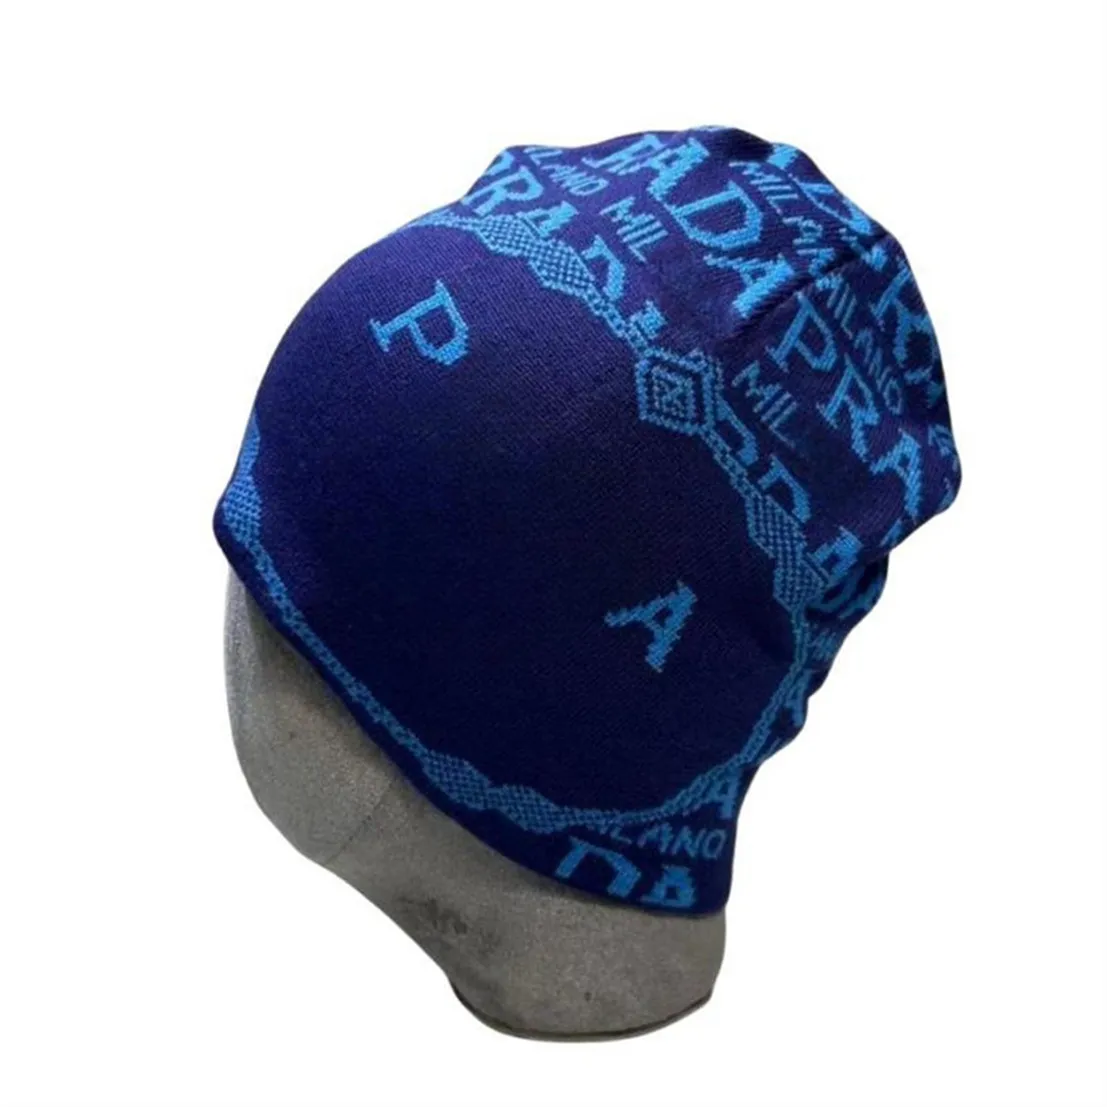 Tasarımcı Beanie Kış Şapkası Erkek Kapağı Modaya Gizli Sıcak Şapka Kış Yeni Örme Yün Şapka Lüks Örme Şapka W-15